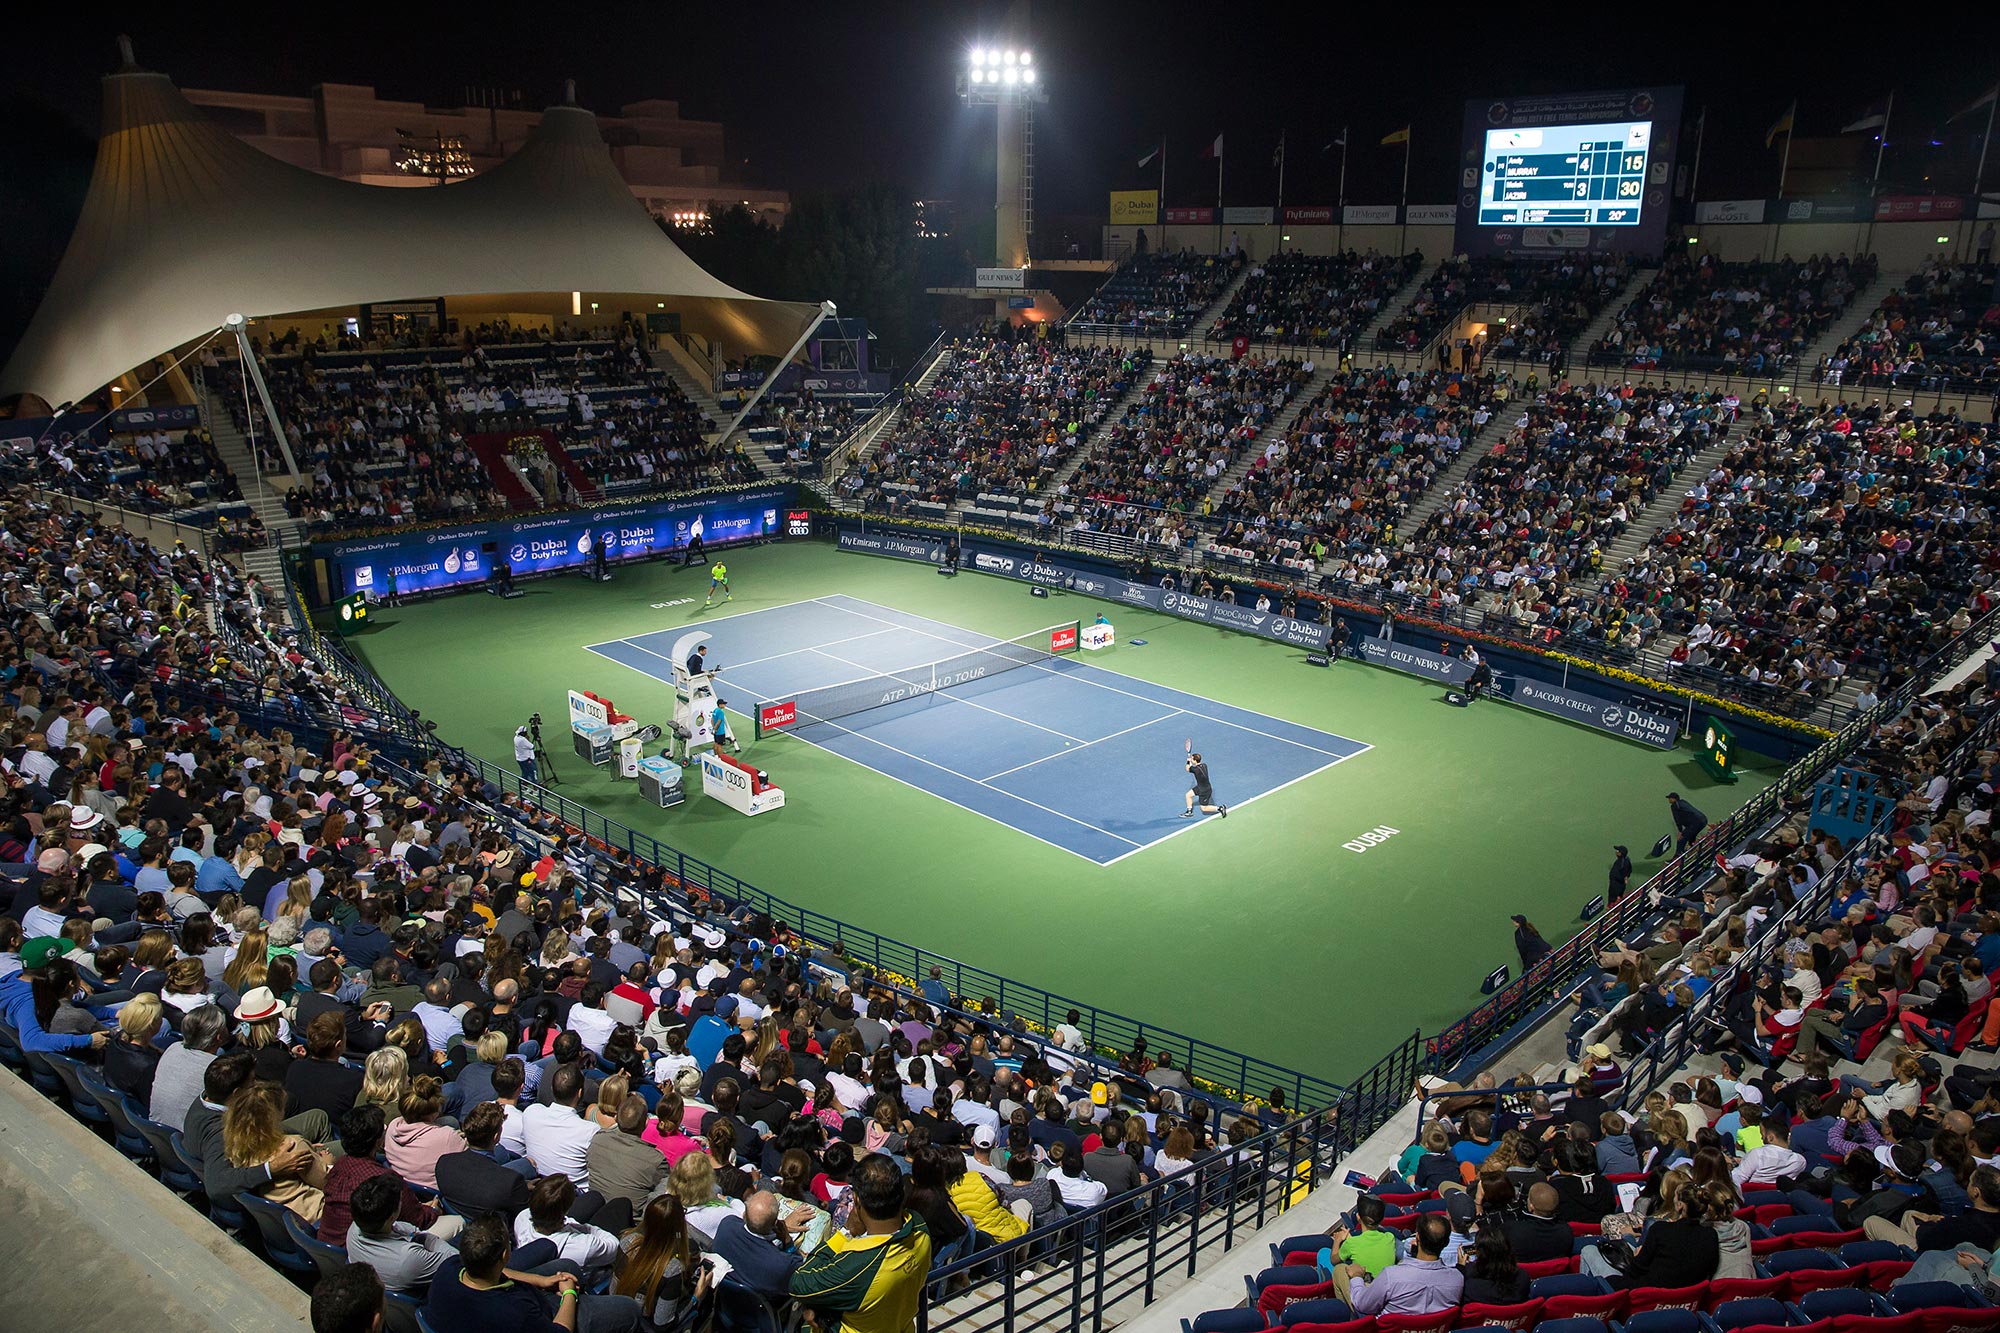 Dubai Tennis 2017 Malek Jaziri Andy Murray